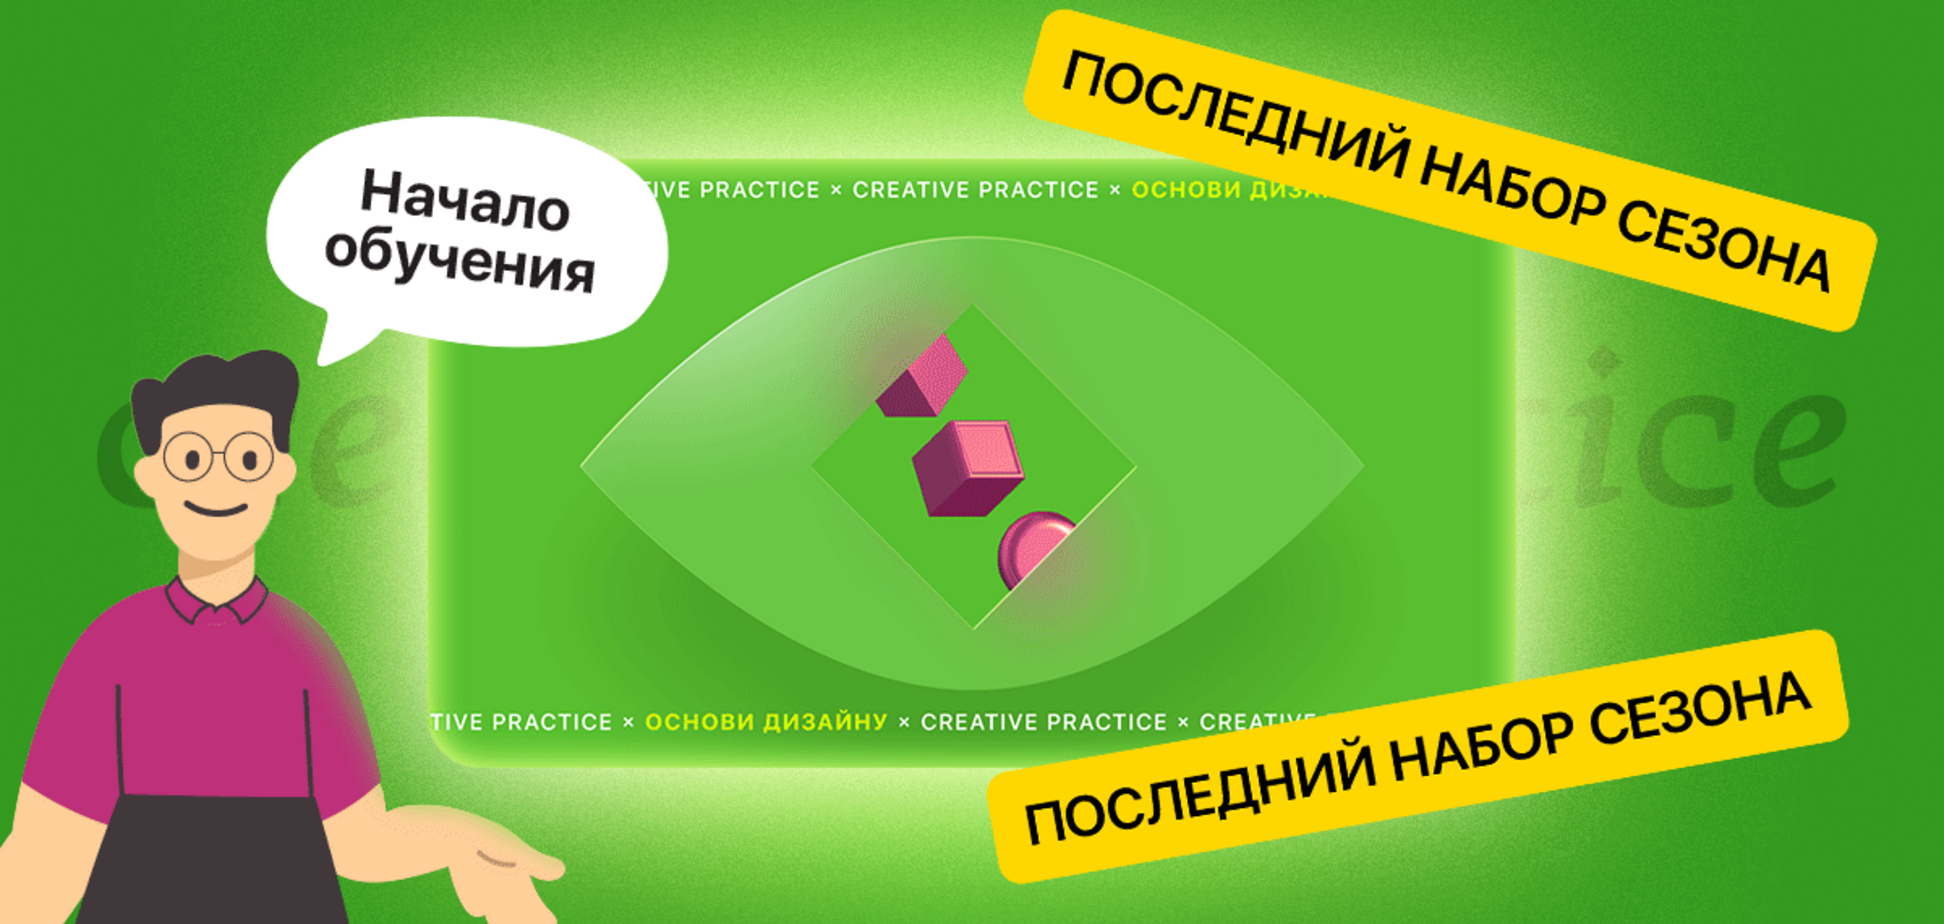 В Украине запустили бесплатный онлайн-курс о дизайне и программу трудоустройства